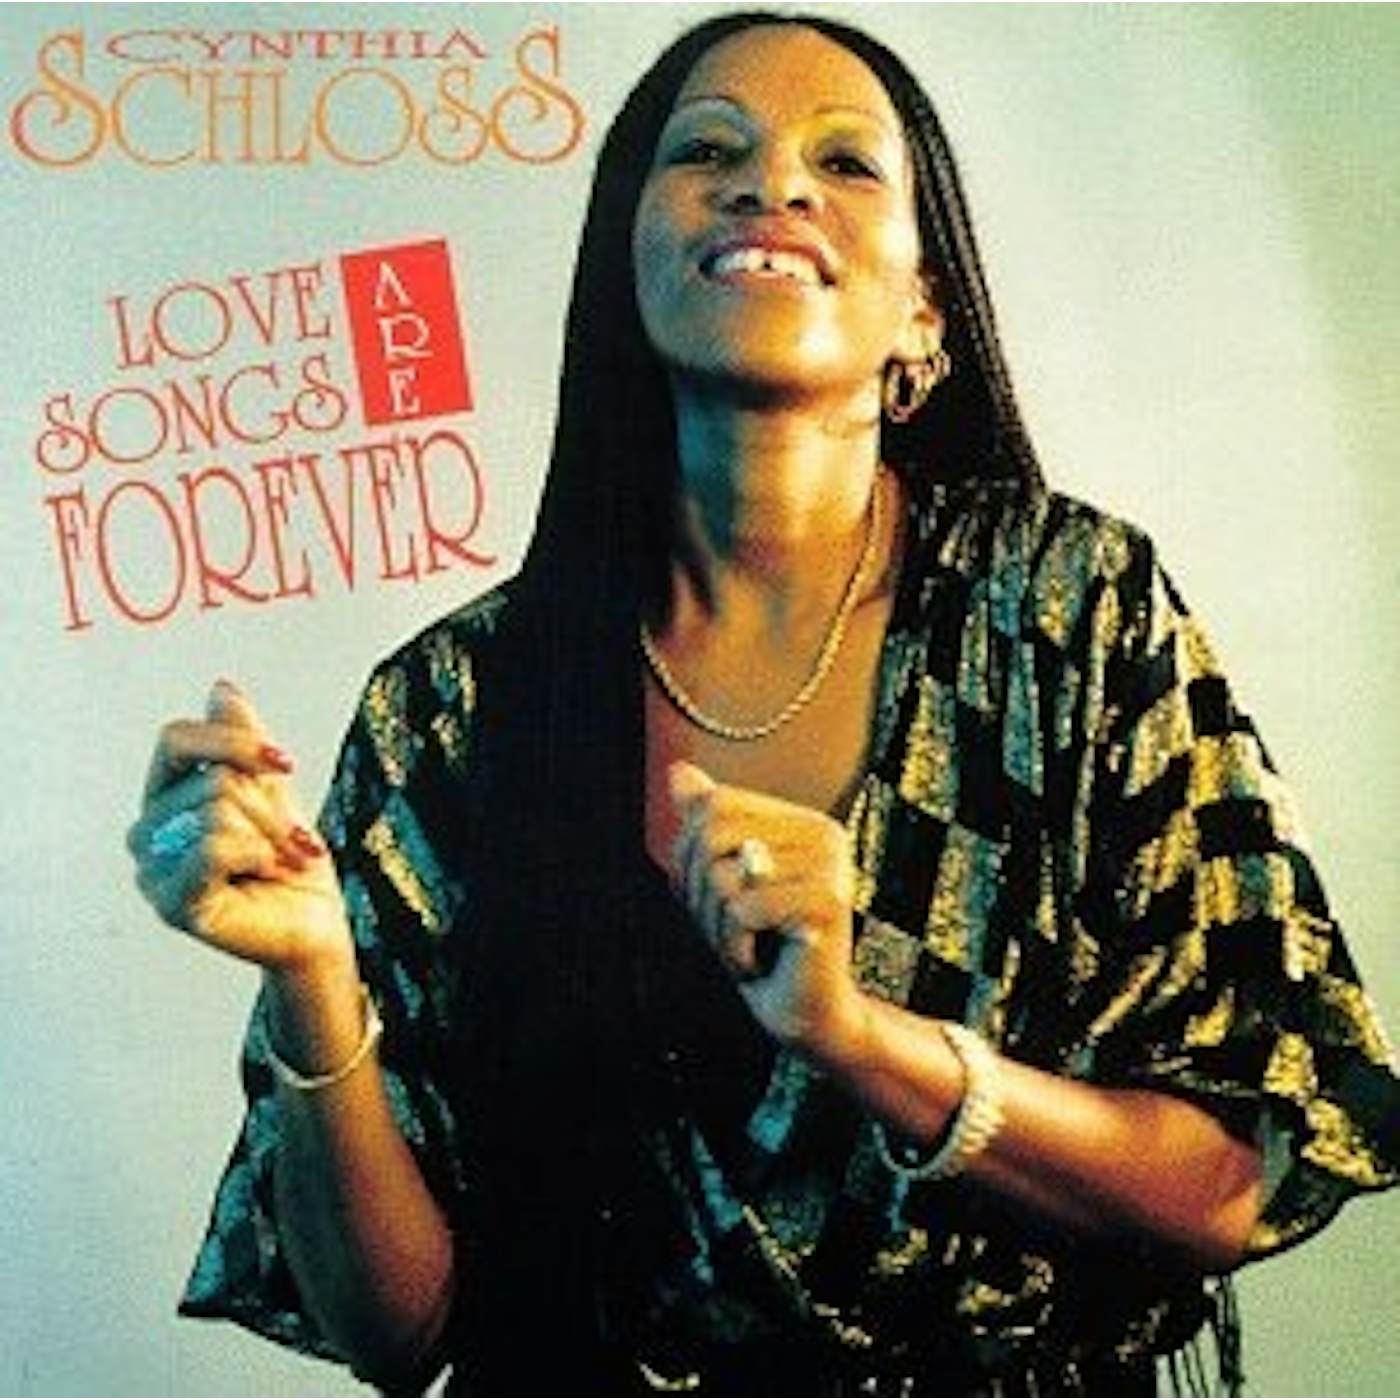 Cynthia Schloss LOVE SONGS ARE FOREVER (Vinyl)